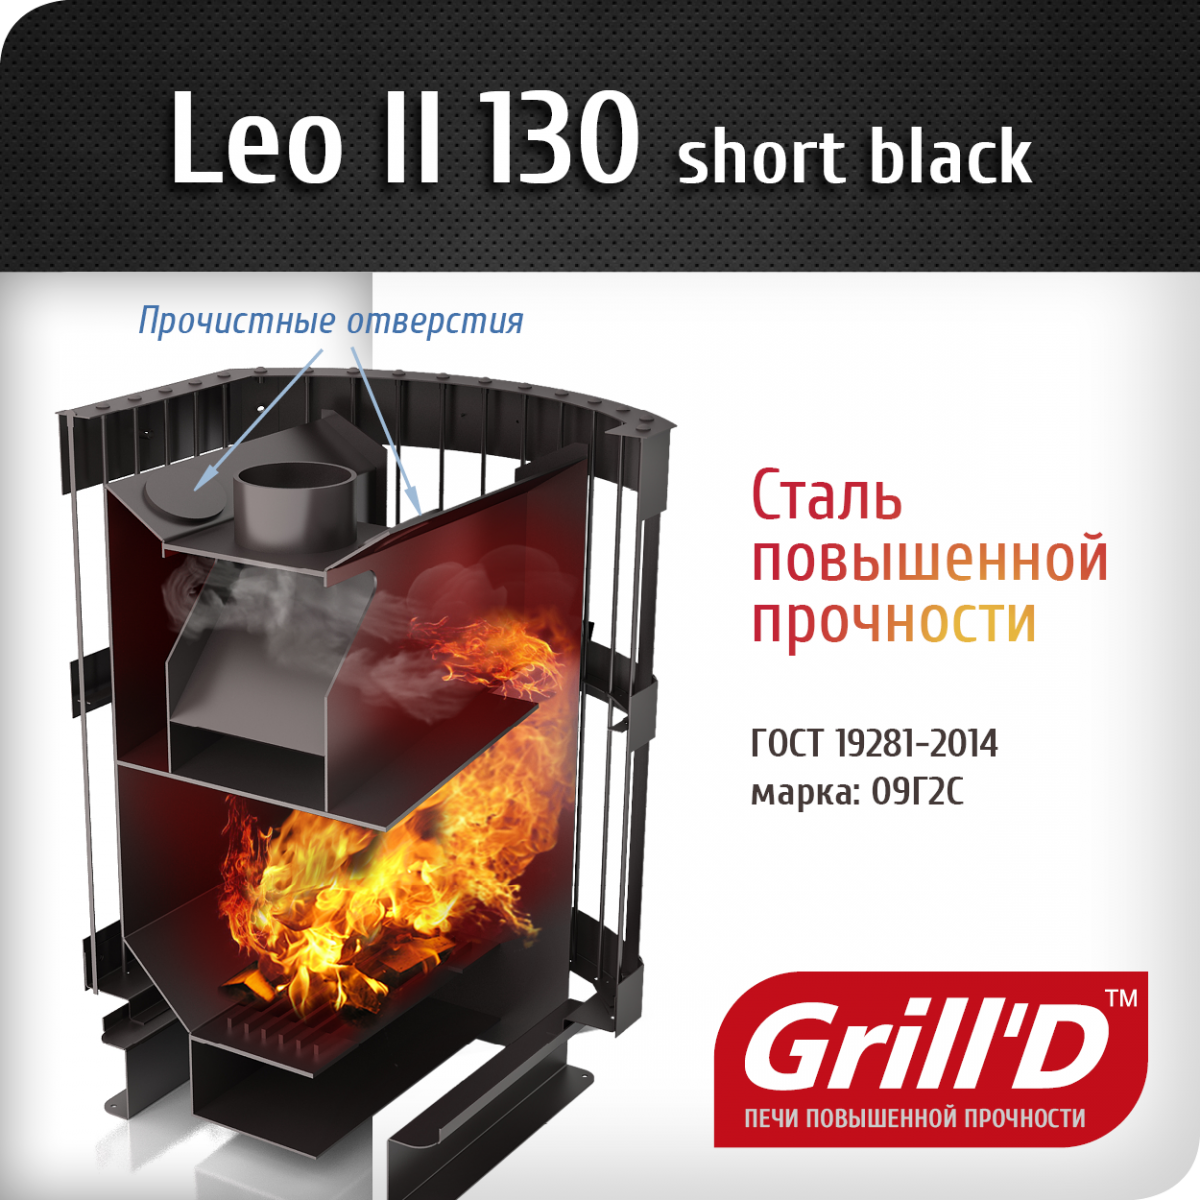 Фото товара Банная печь Grill'D Leo II 130 Short black. Изображение №2